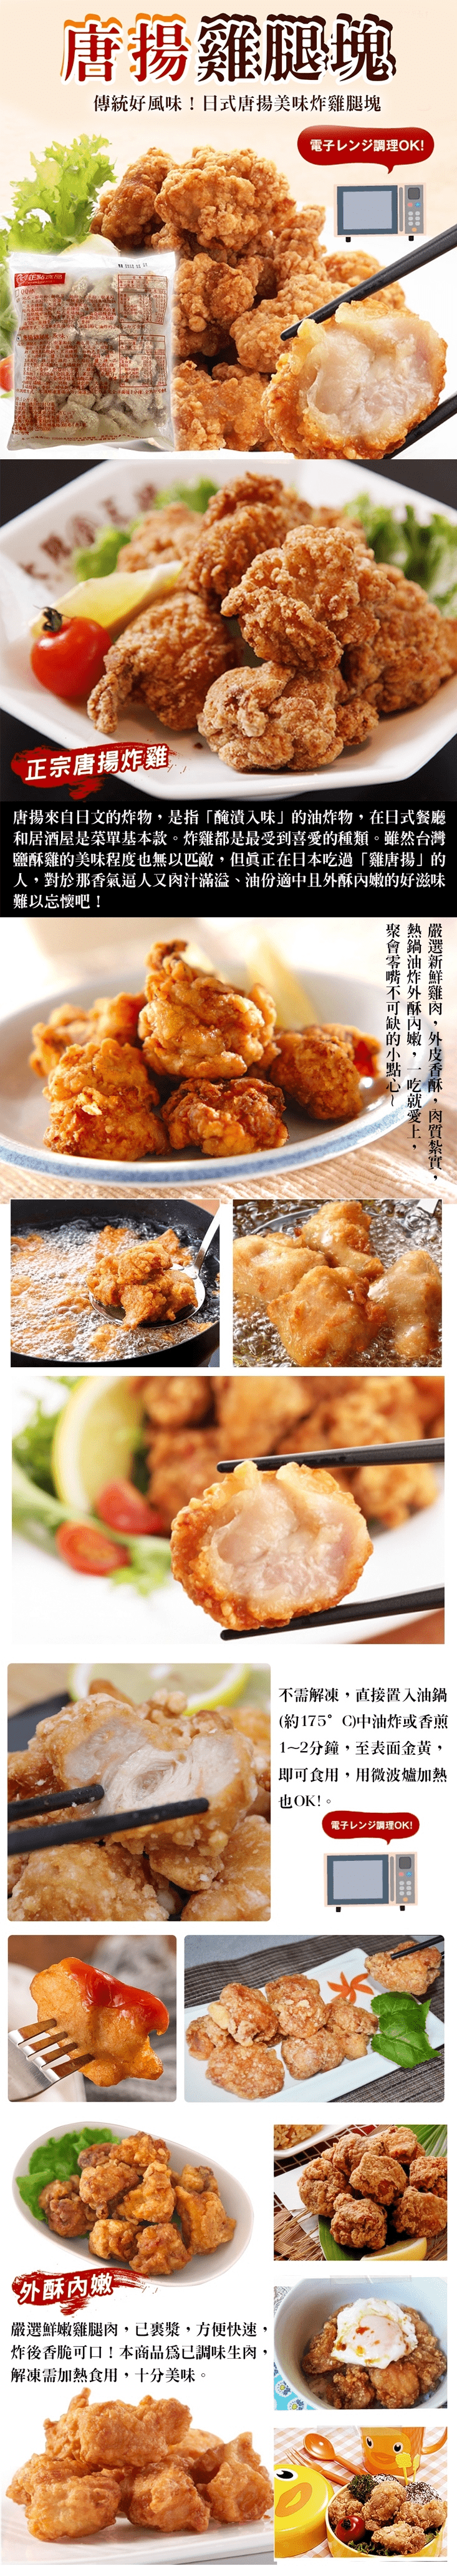       【海肉管家】日式唐揚雞腿塊超大包裝(5包_1kg/包)